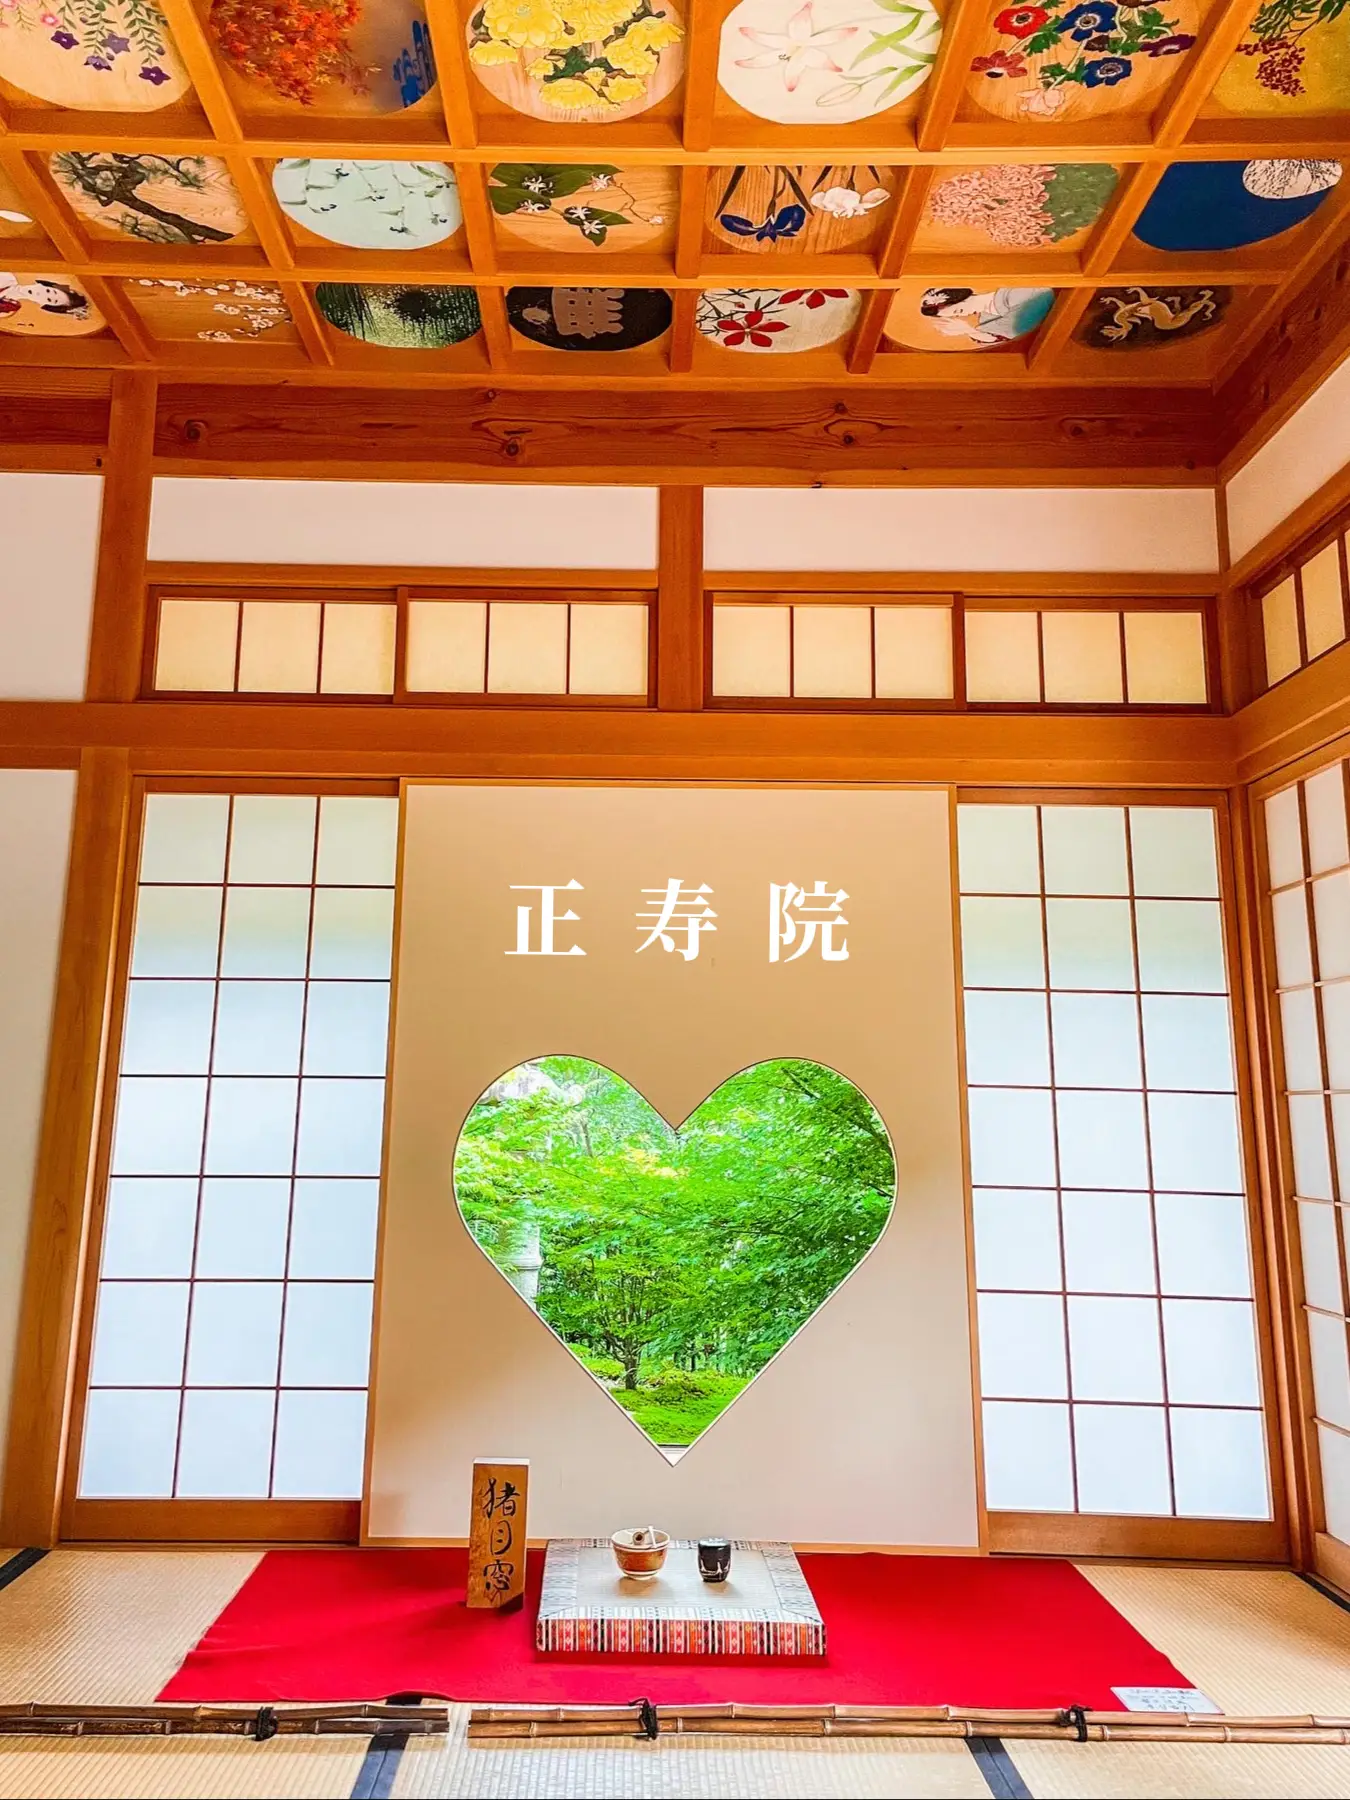 【京都】2000個超えの風鈴とハートの窓がある可愛いお寺の画像 (1枚目)